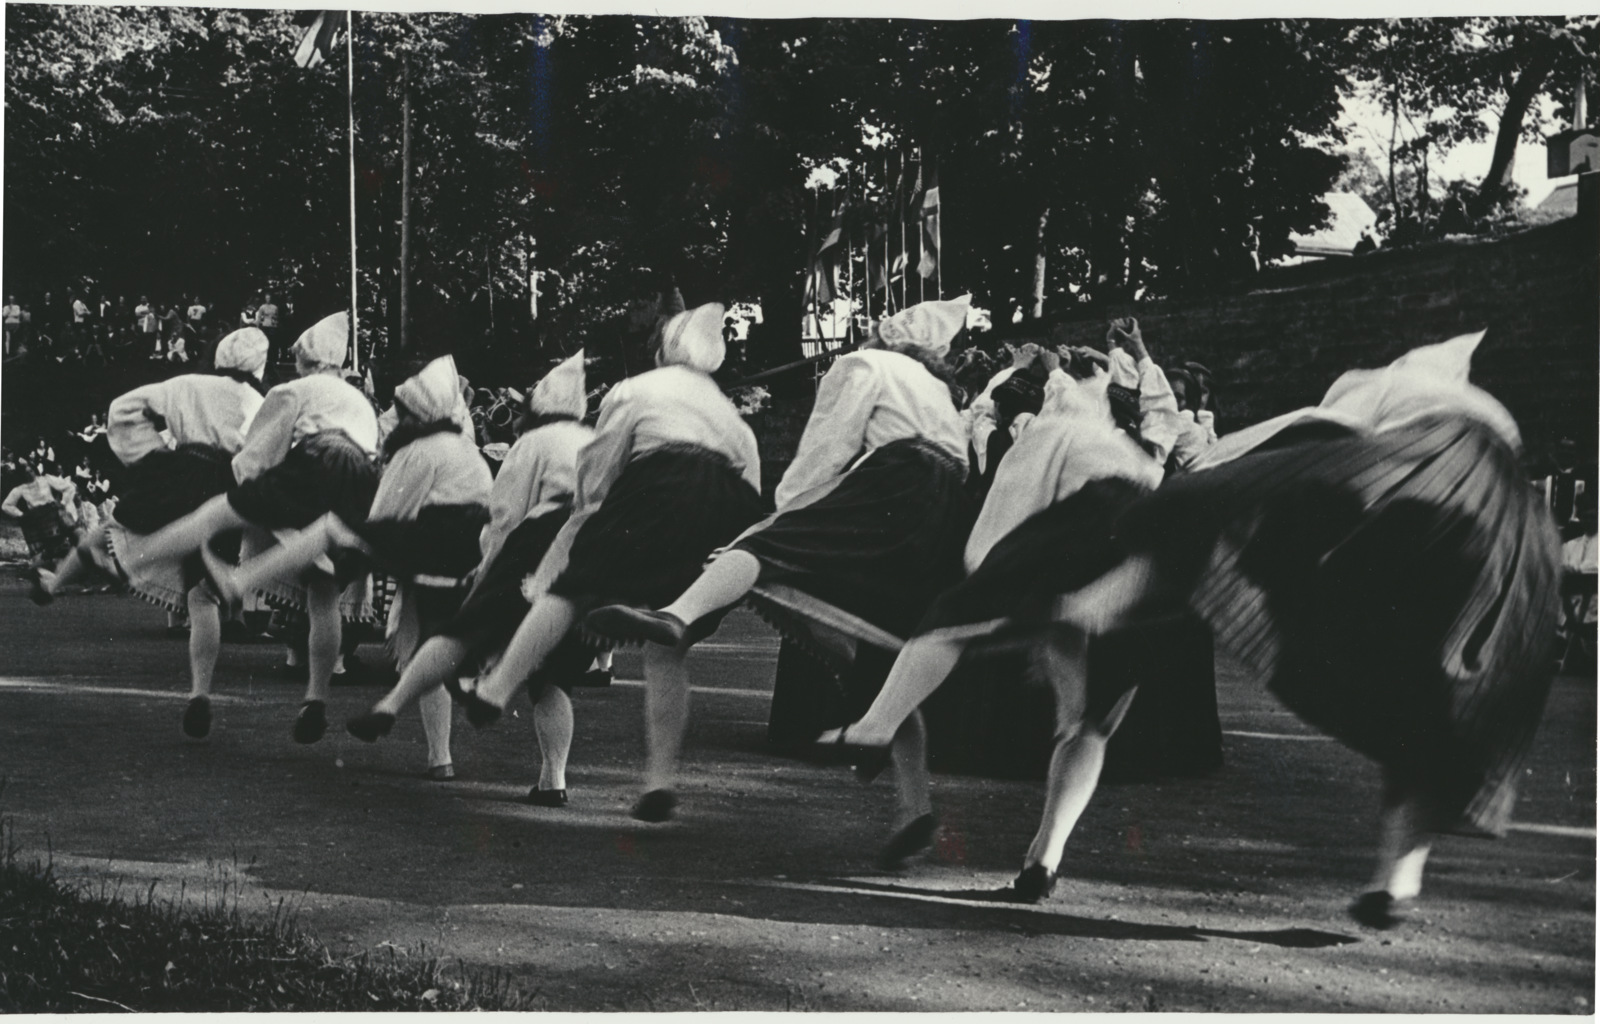 foto, Viljandi rajooni laulu- ja tantsupidu, naisrühmad, 1975, foto B. Veidebaum